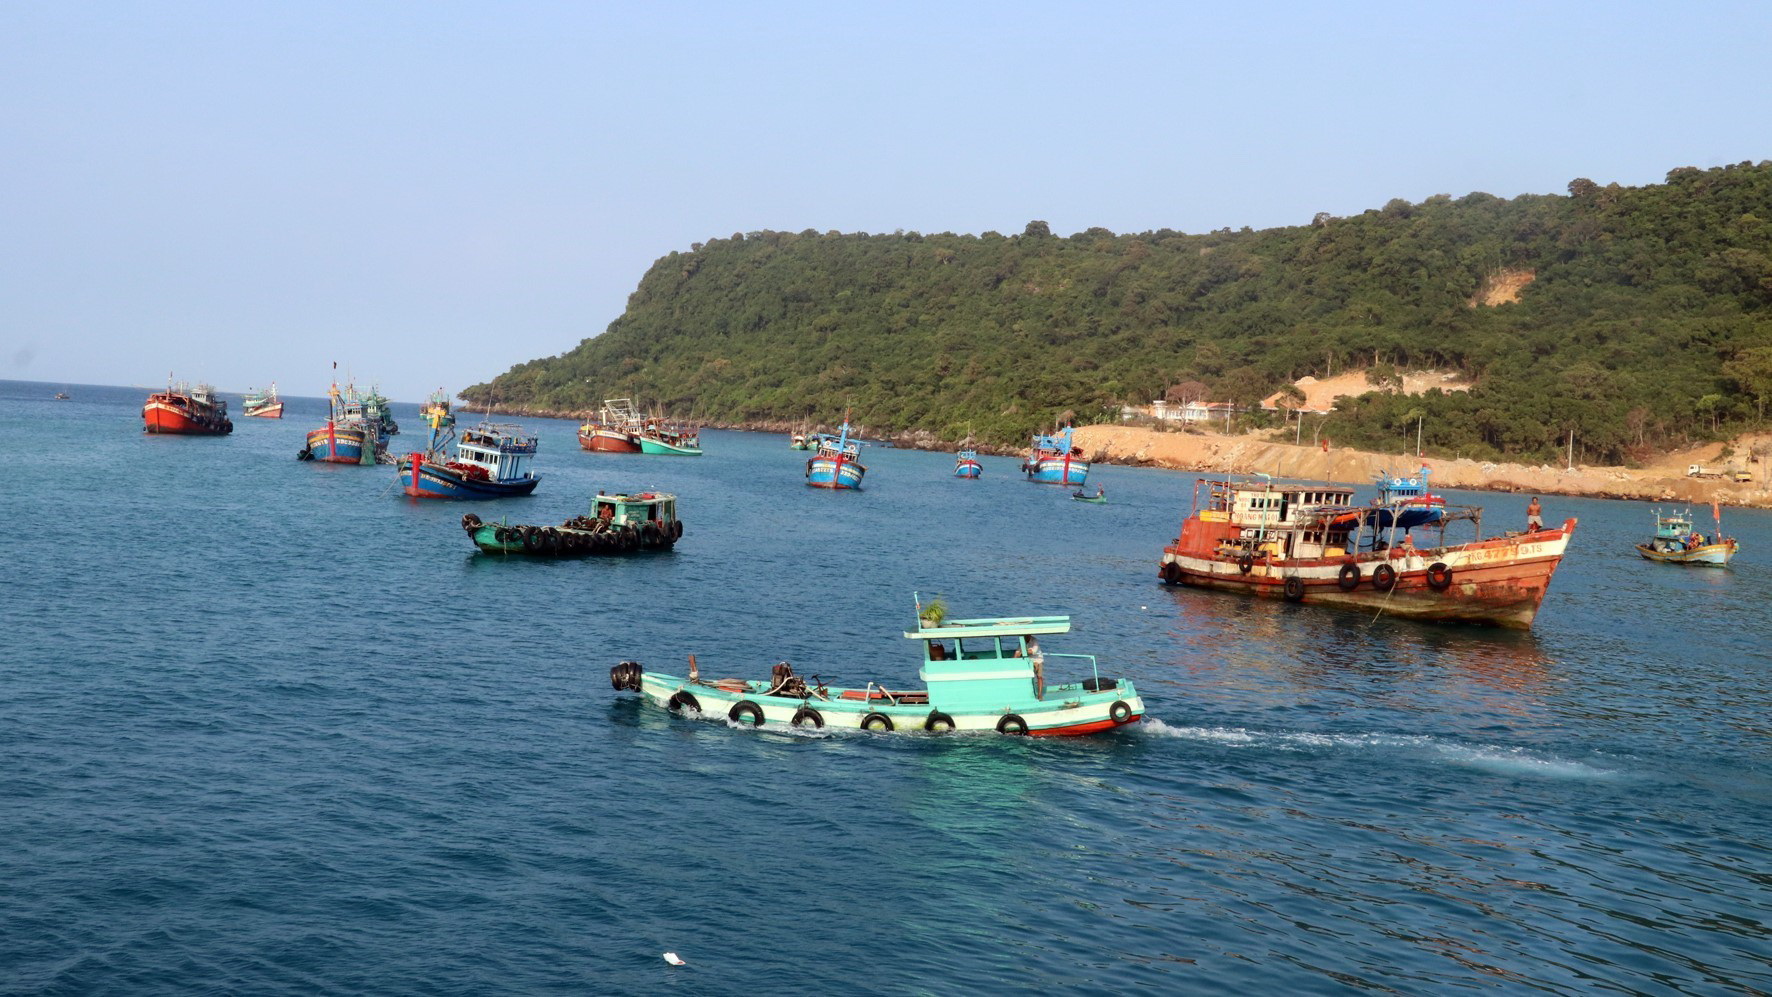 Tàu cá neo đậu trên vùng biển đảo Thổ Chu, huyện Phú Quốc (Kiên Giang). (Ảnh: Lê Huy Hải/TTXVN)